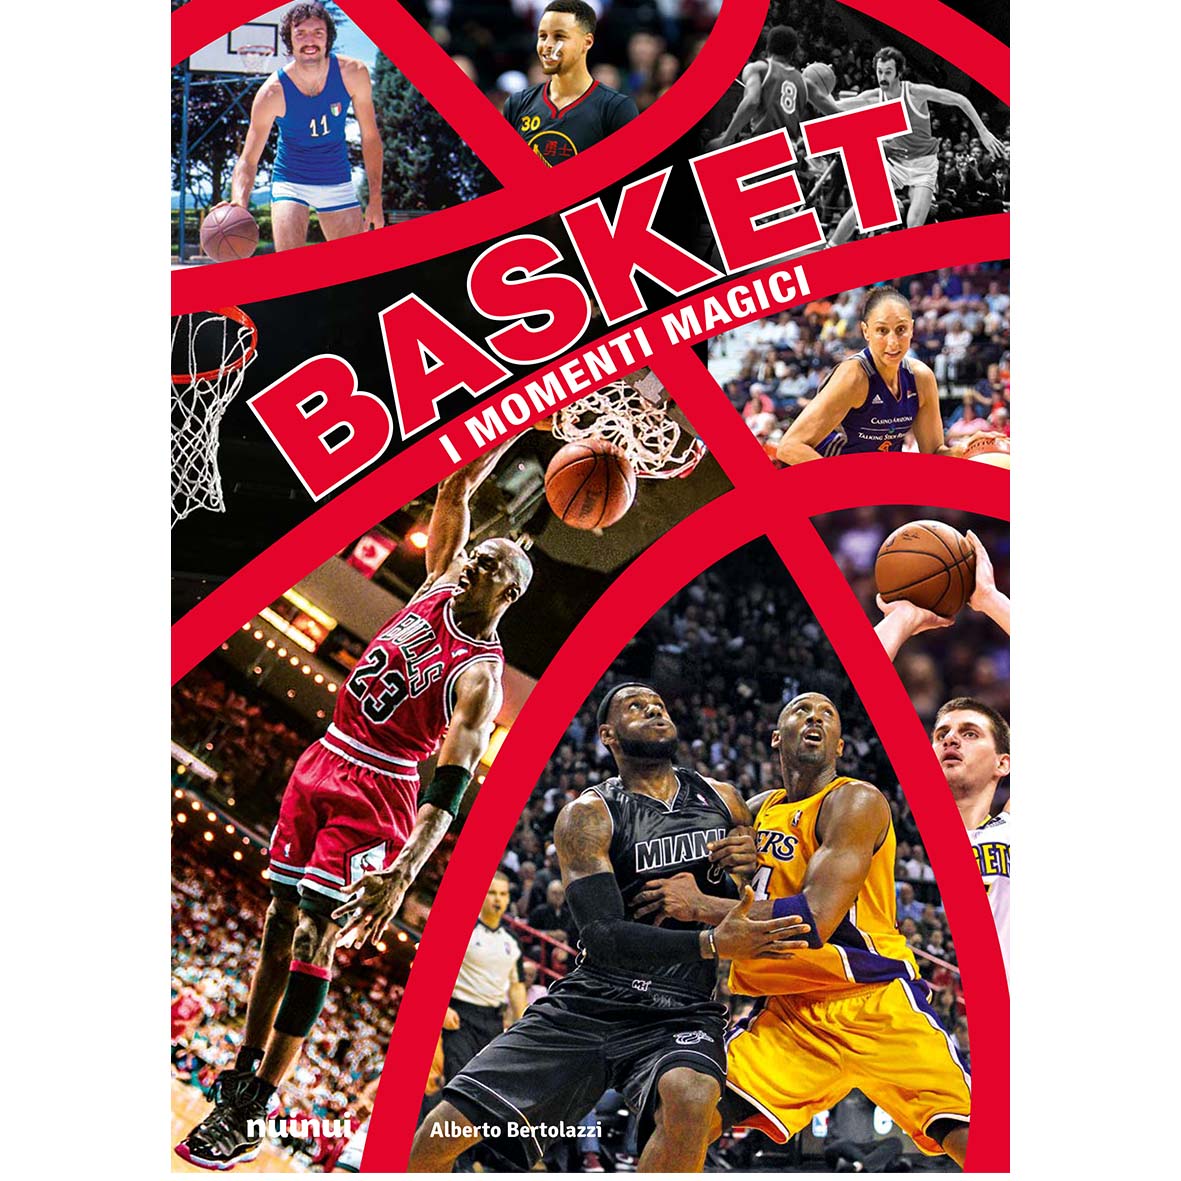 Basket - I momenti magici (nuova edizione)